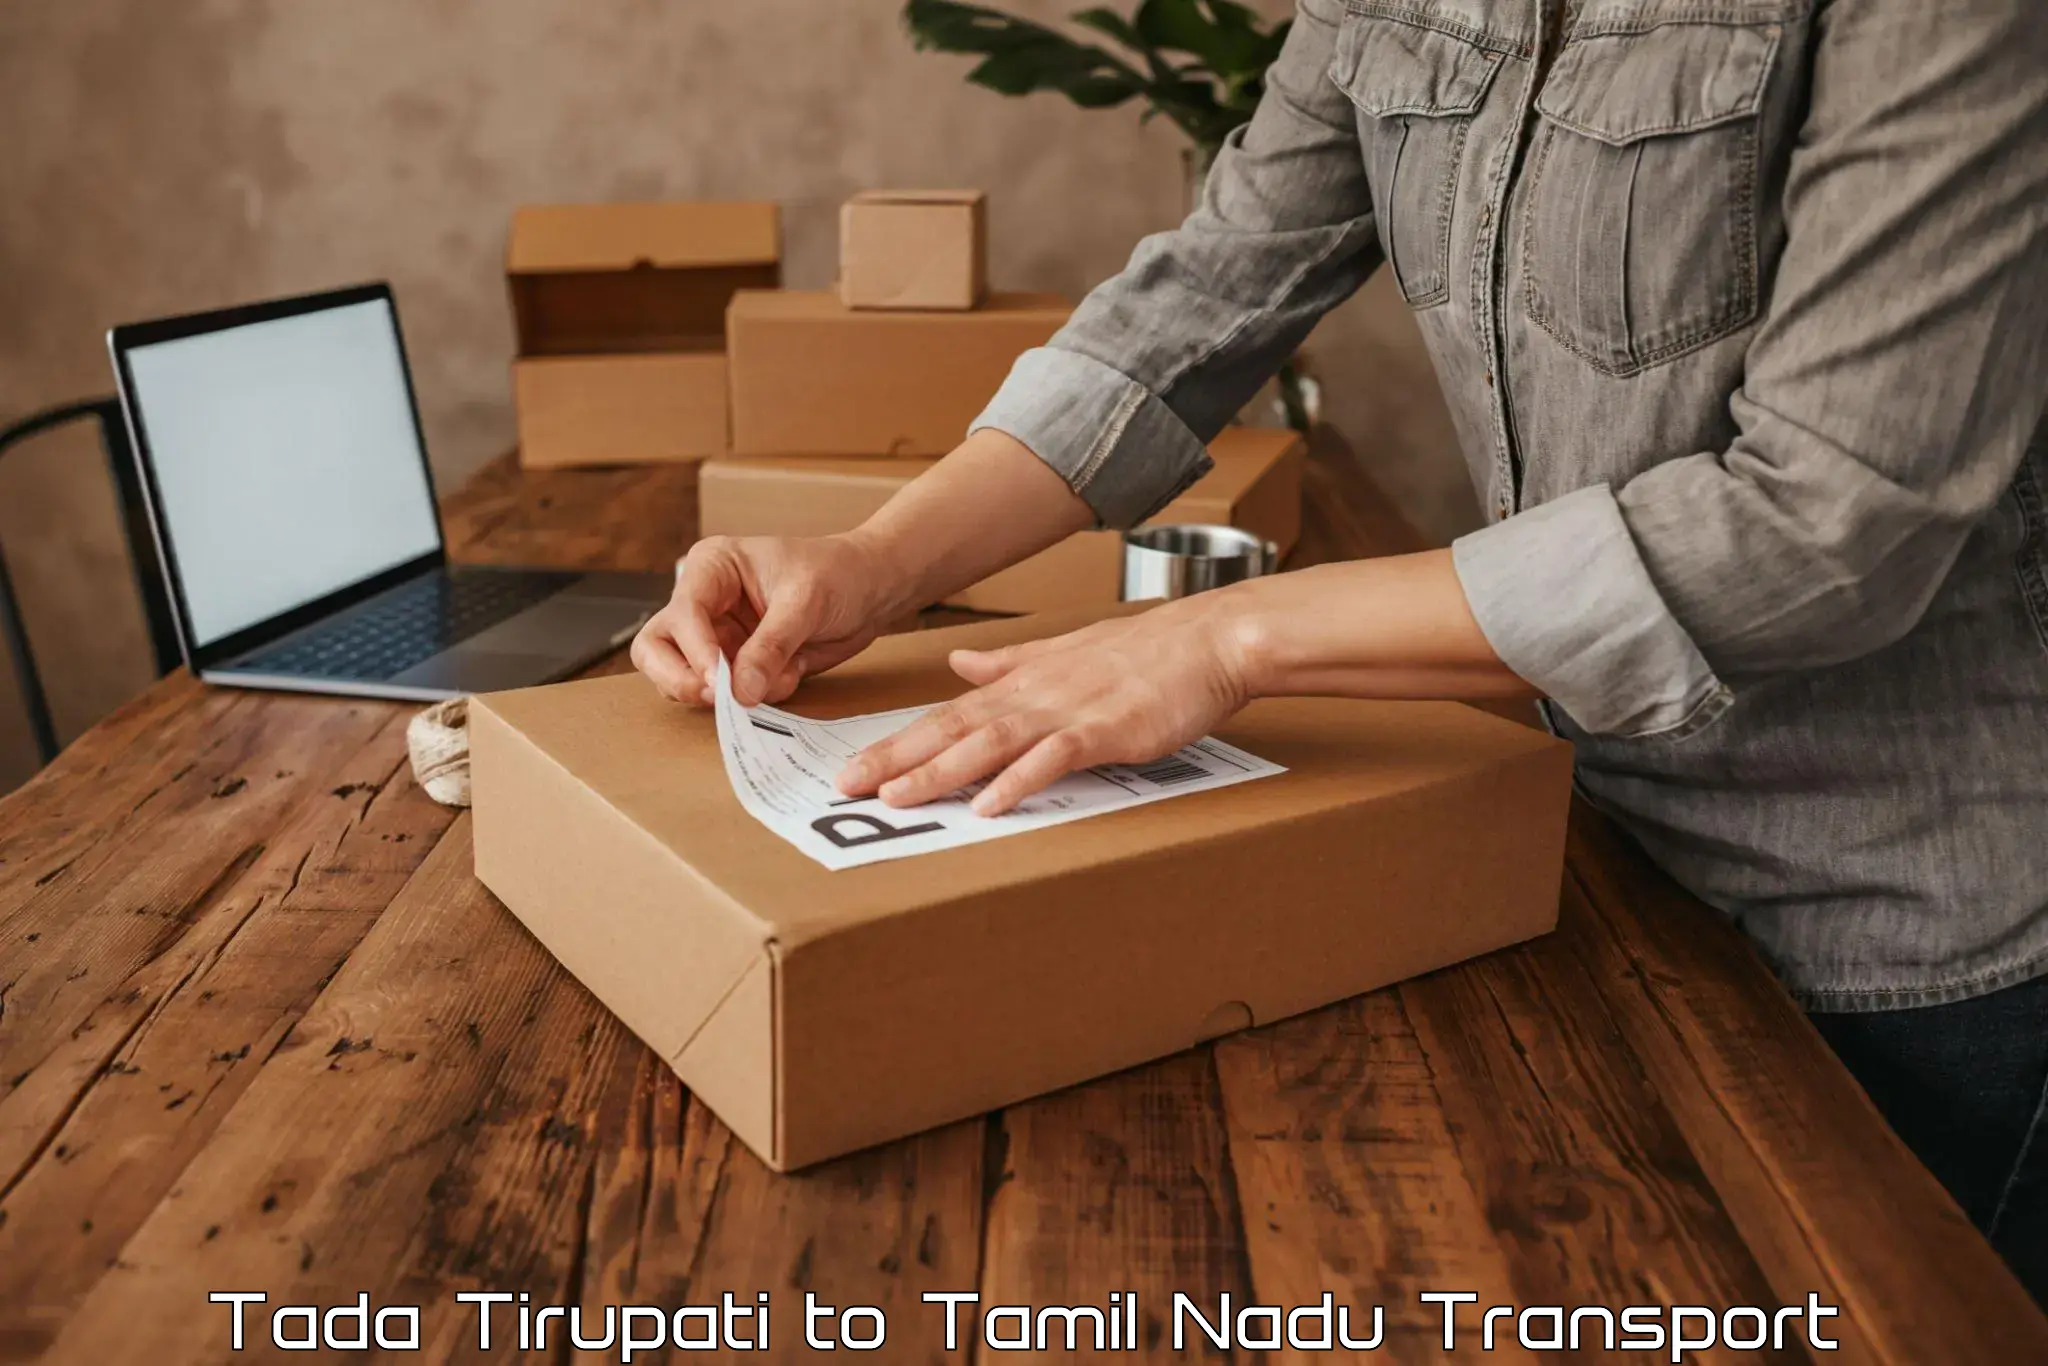 Container transport service Tada Tirupati to Namakkal